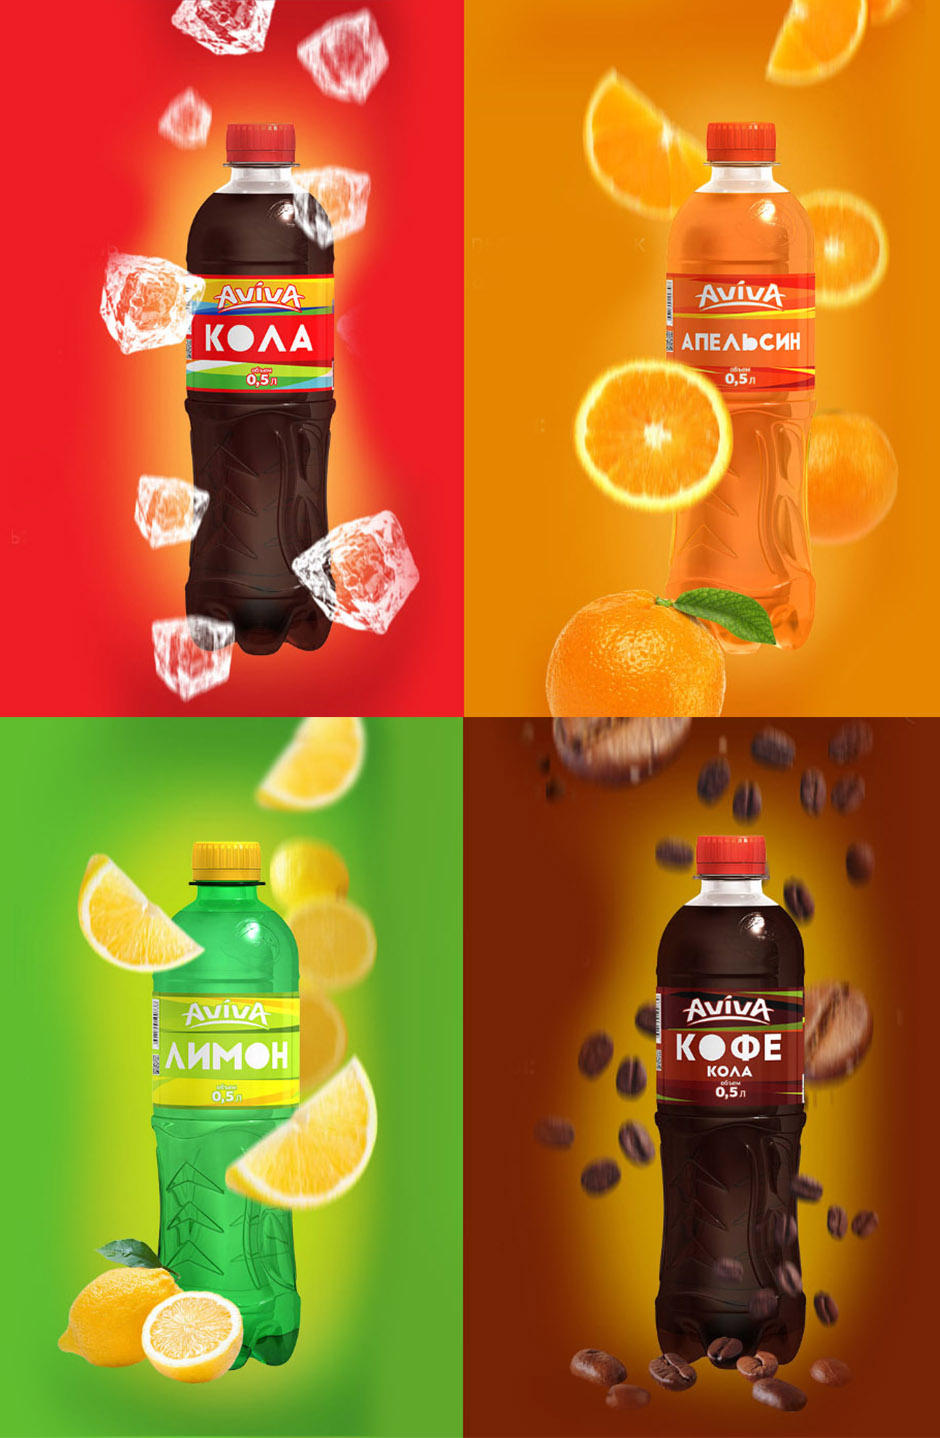 Soda label design, дизайн этикетки для лимонада